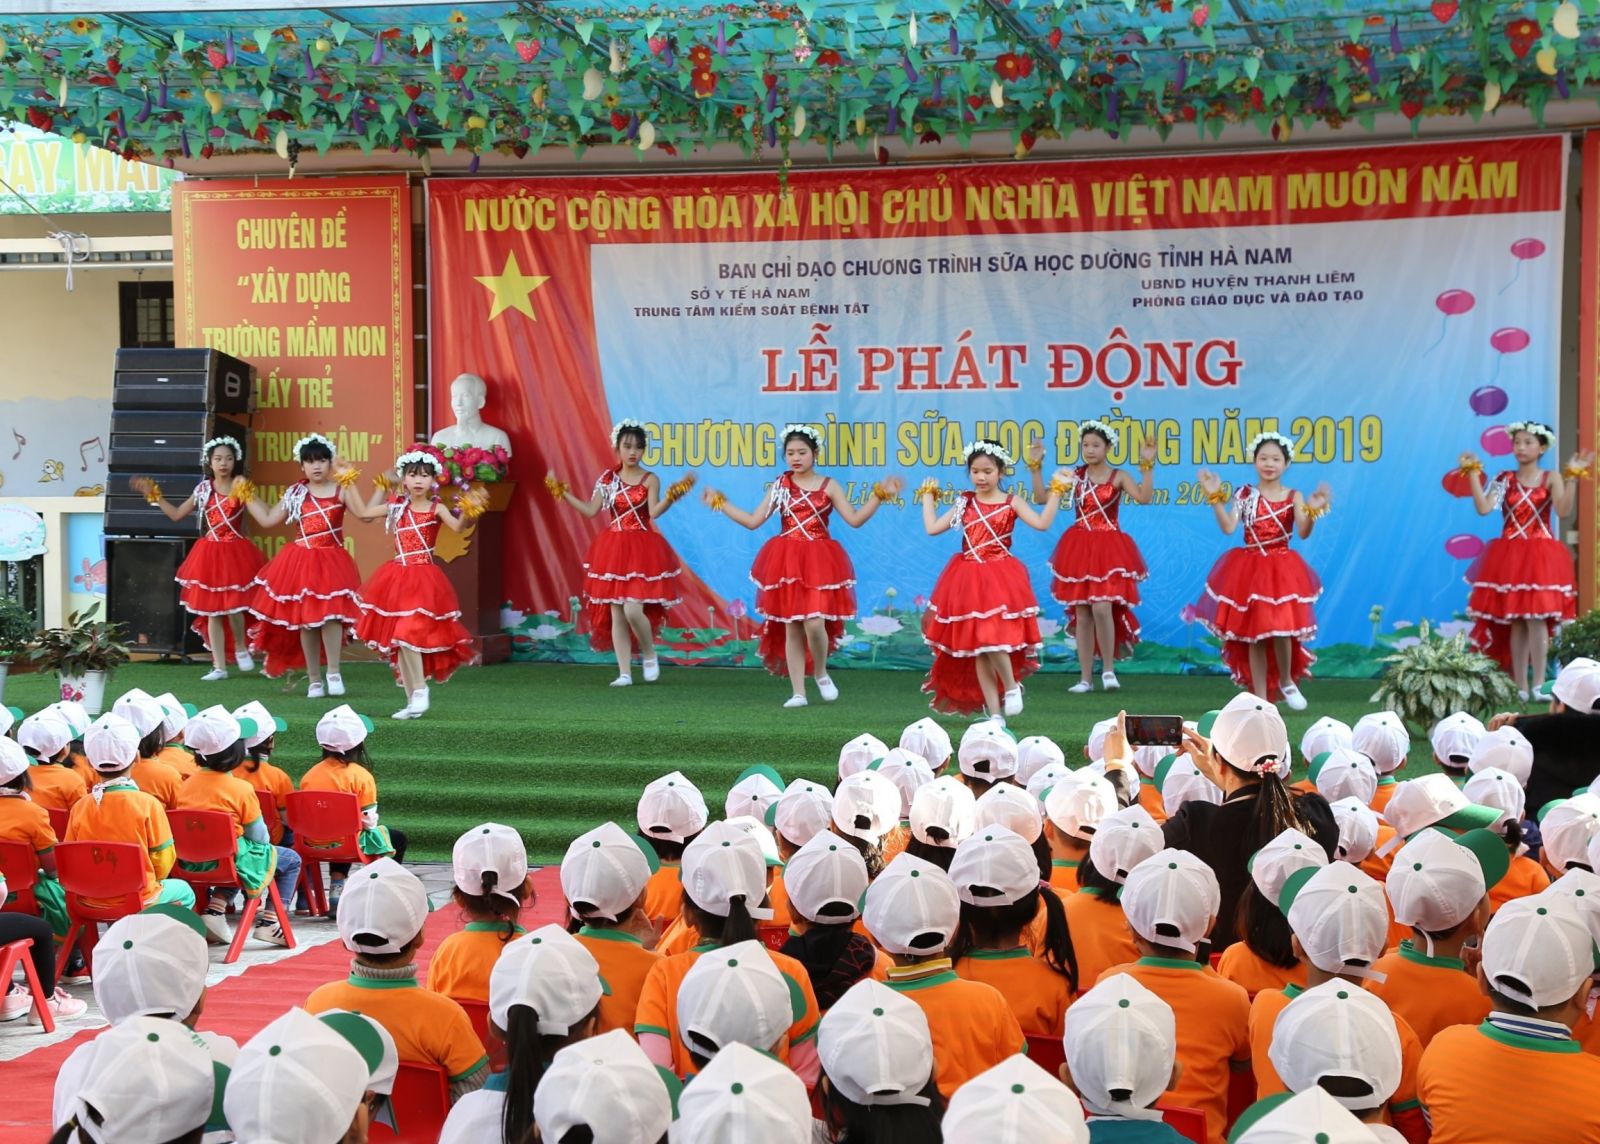 Tỉnh Hà Nam tổ chức lễ phát động chương trình sữa học đường